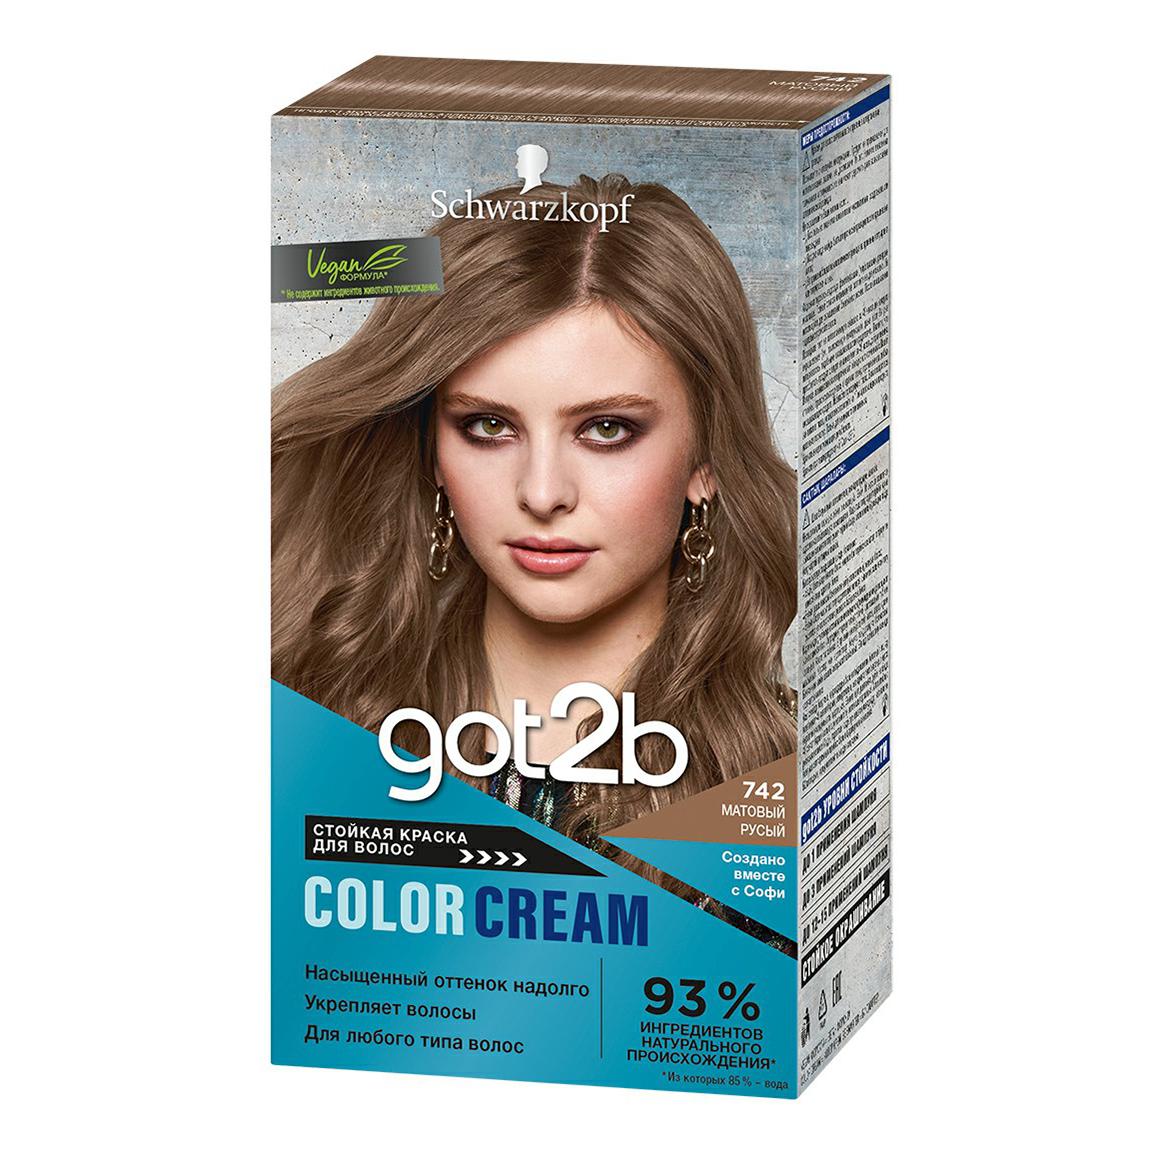 Краска для волос Got2B color cream 742 матовый русый, 142,5 мл., картон